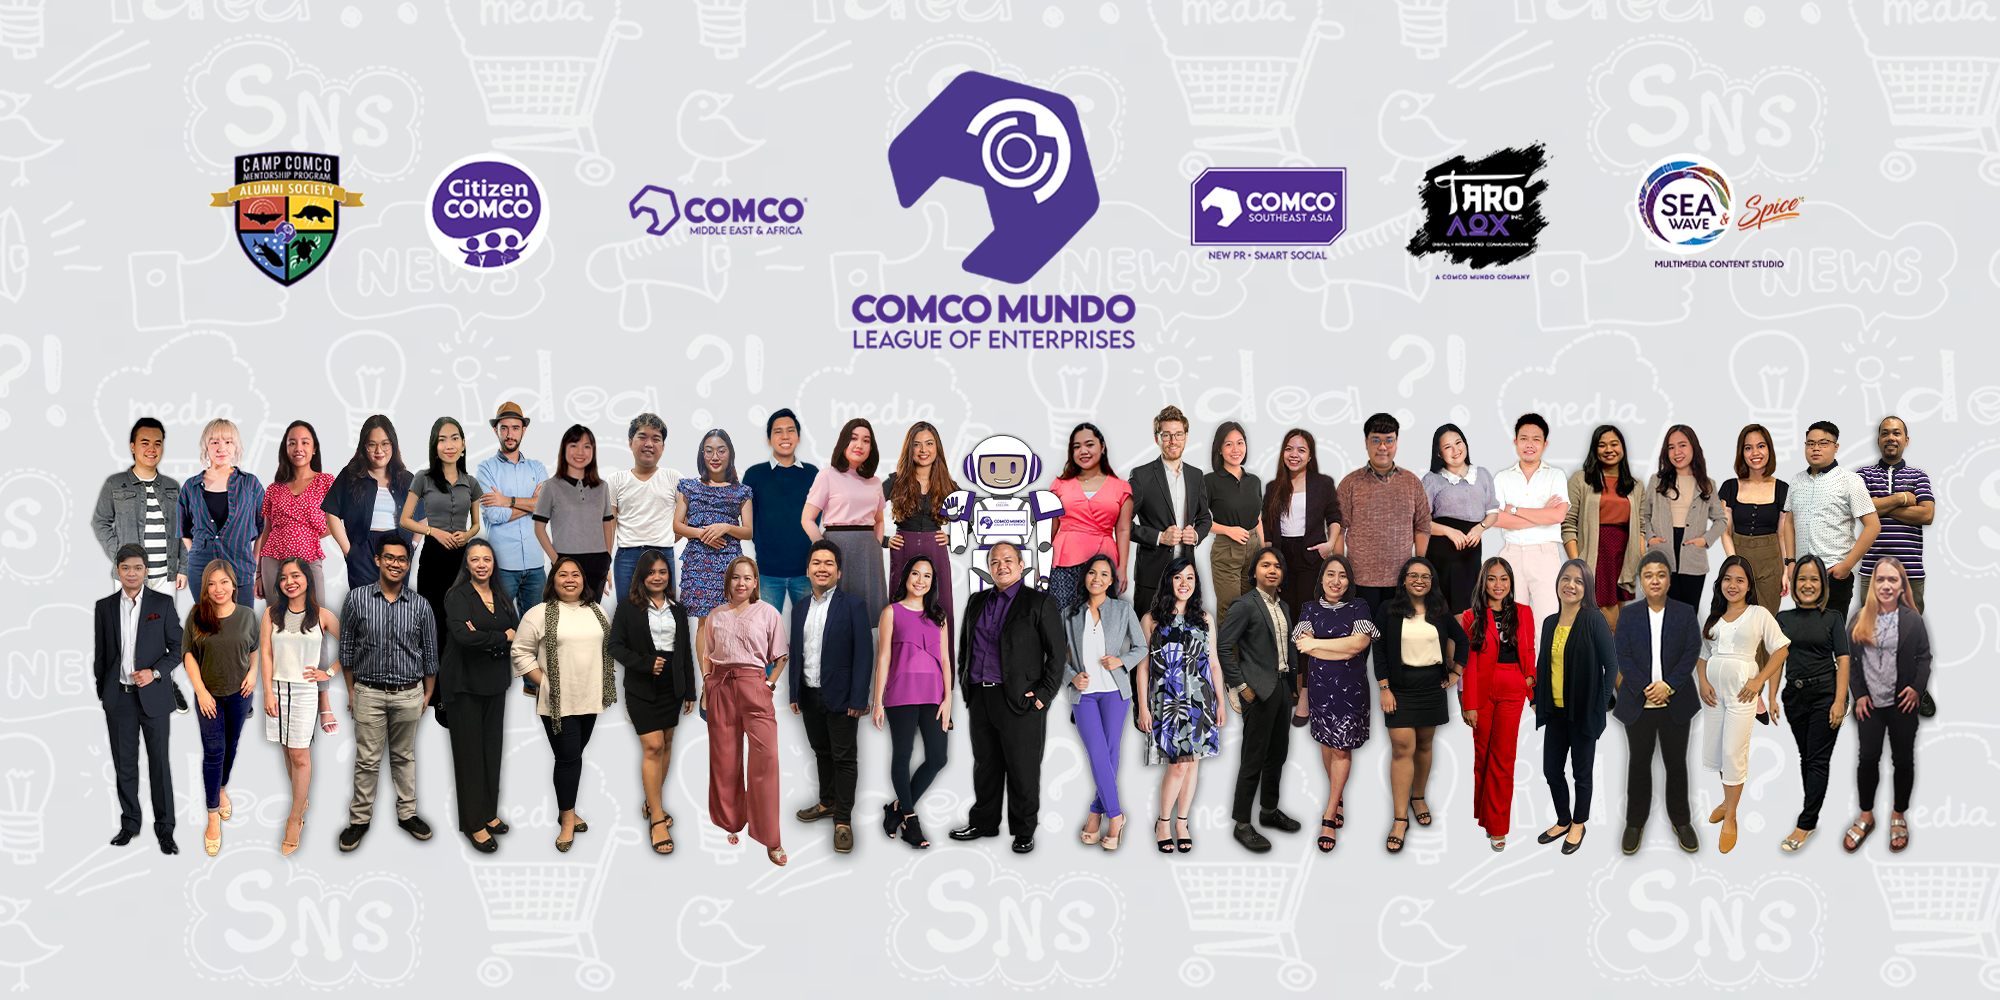 COMCO Mundo Group Shot PR and Digital